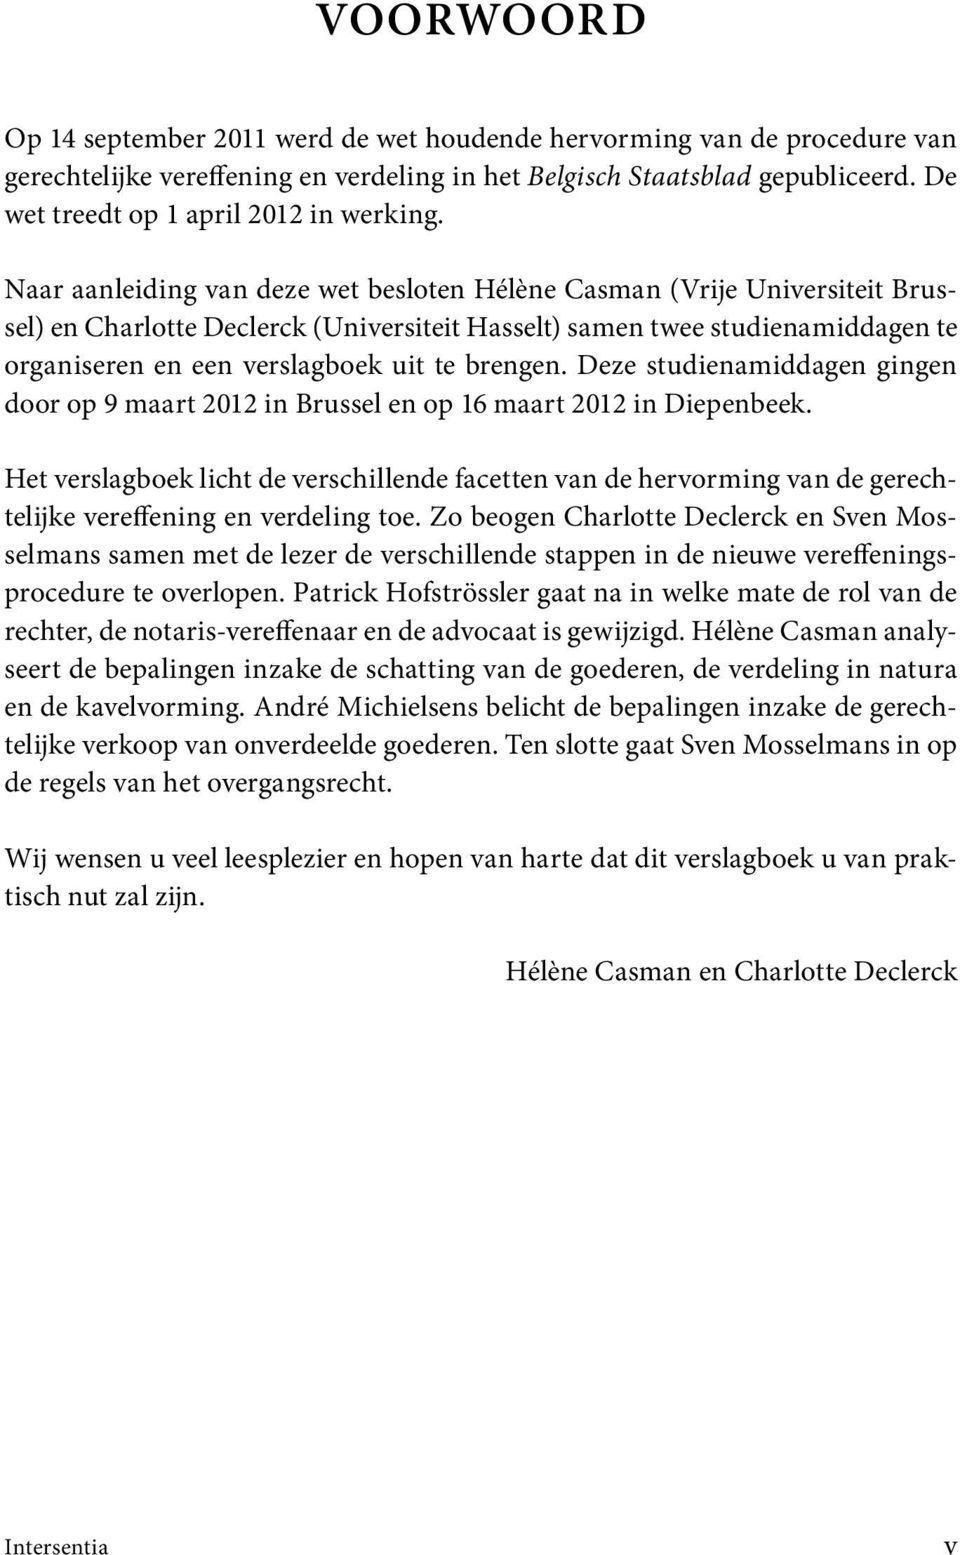 Naar aanleiding van deze wet besloten Hélène Casman (Vrije Universiteit Brussel) en Charlotte Declerck (Universiteit Hasselt) samen twee studienamiddagen te organiseren en een verslagboek uit te